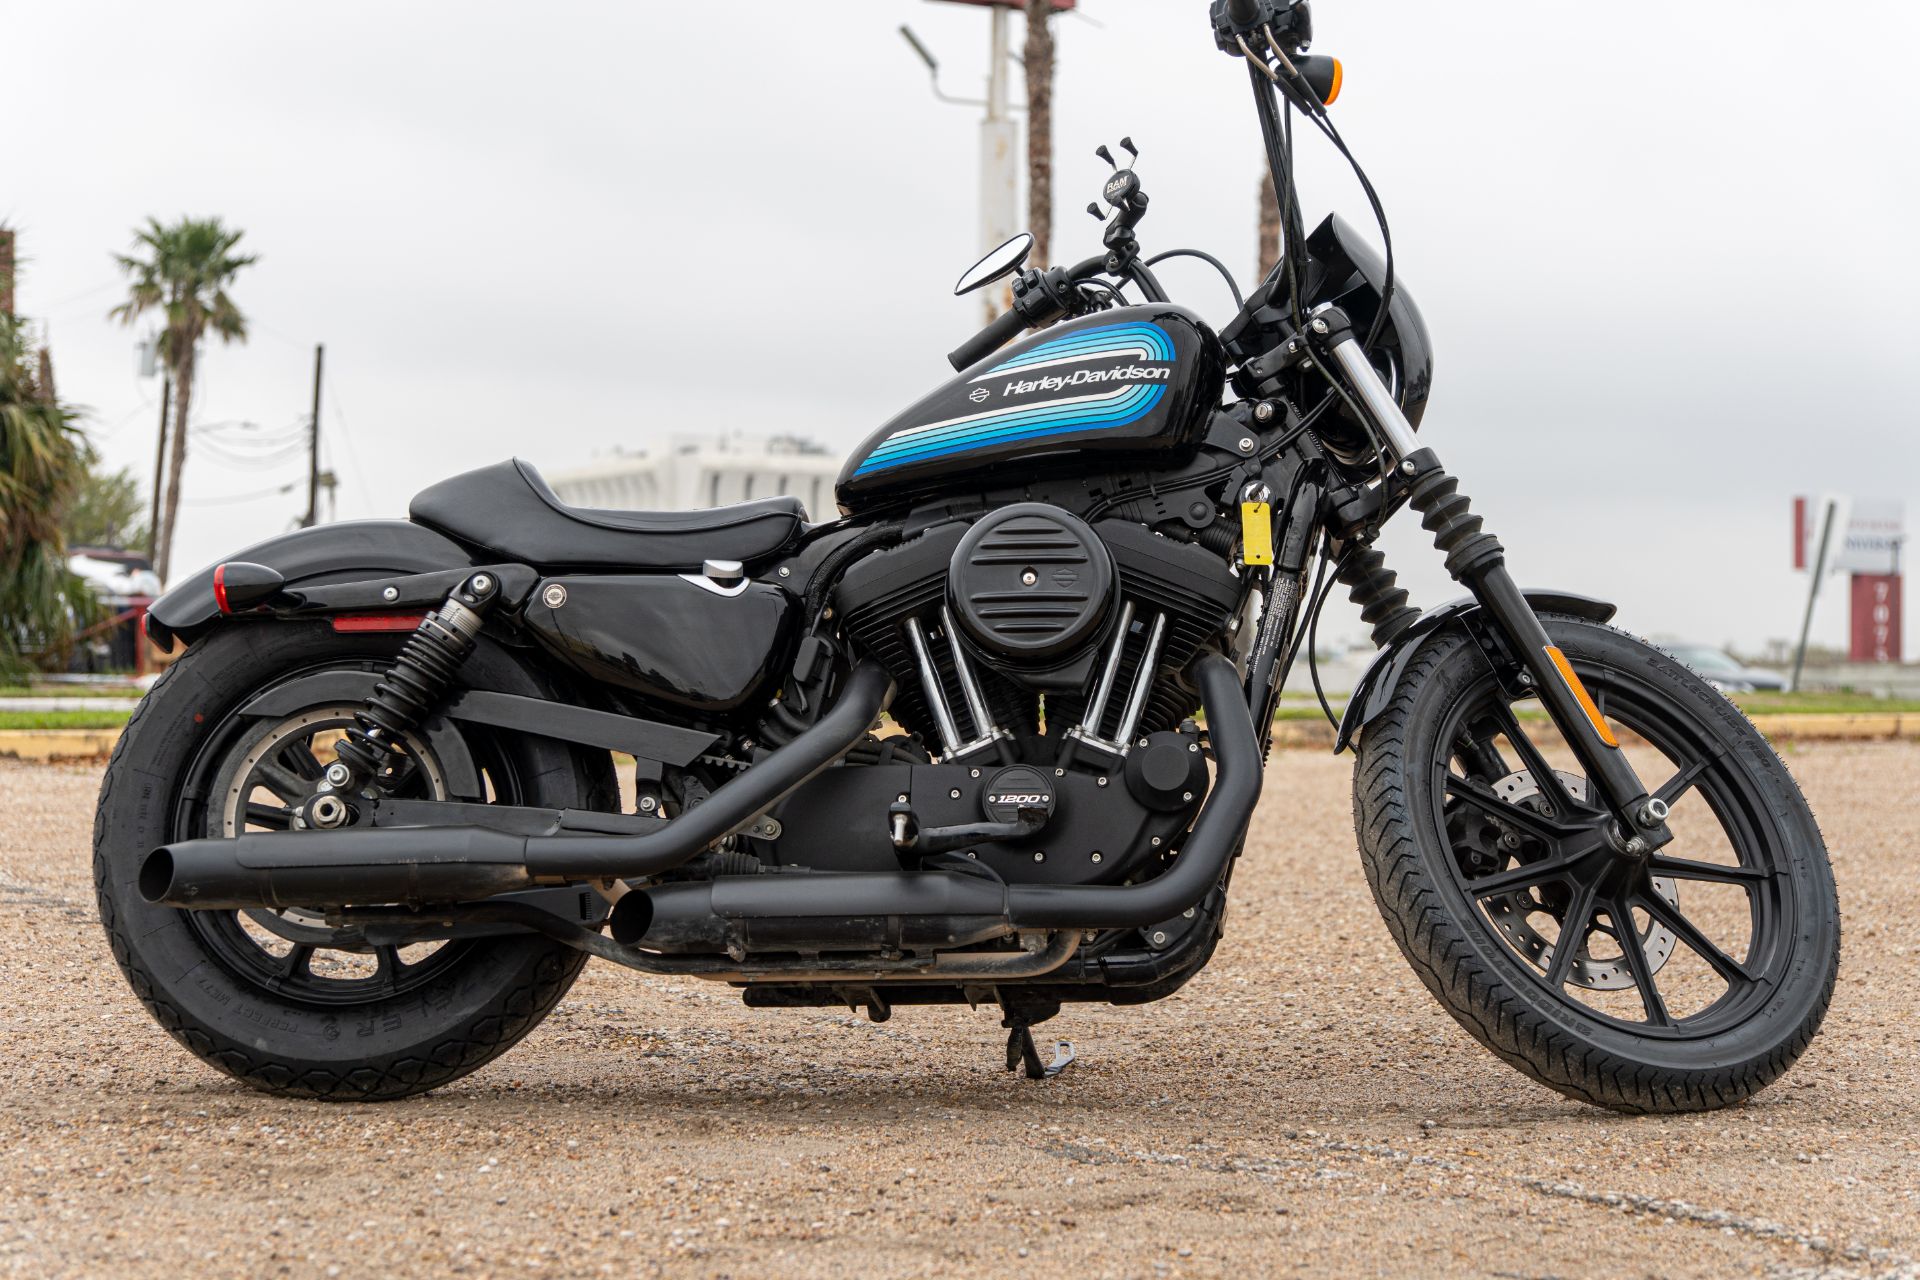 2018 Harley-Davidson Iron 1200™ in Houston, Texas - Photo 2